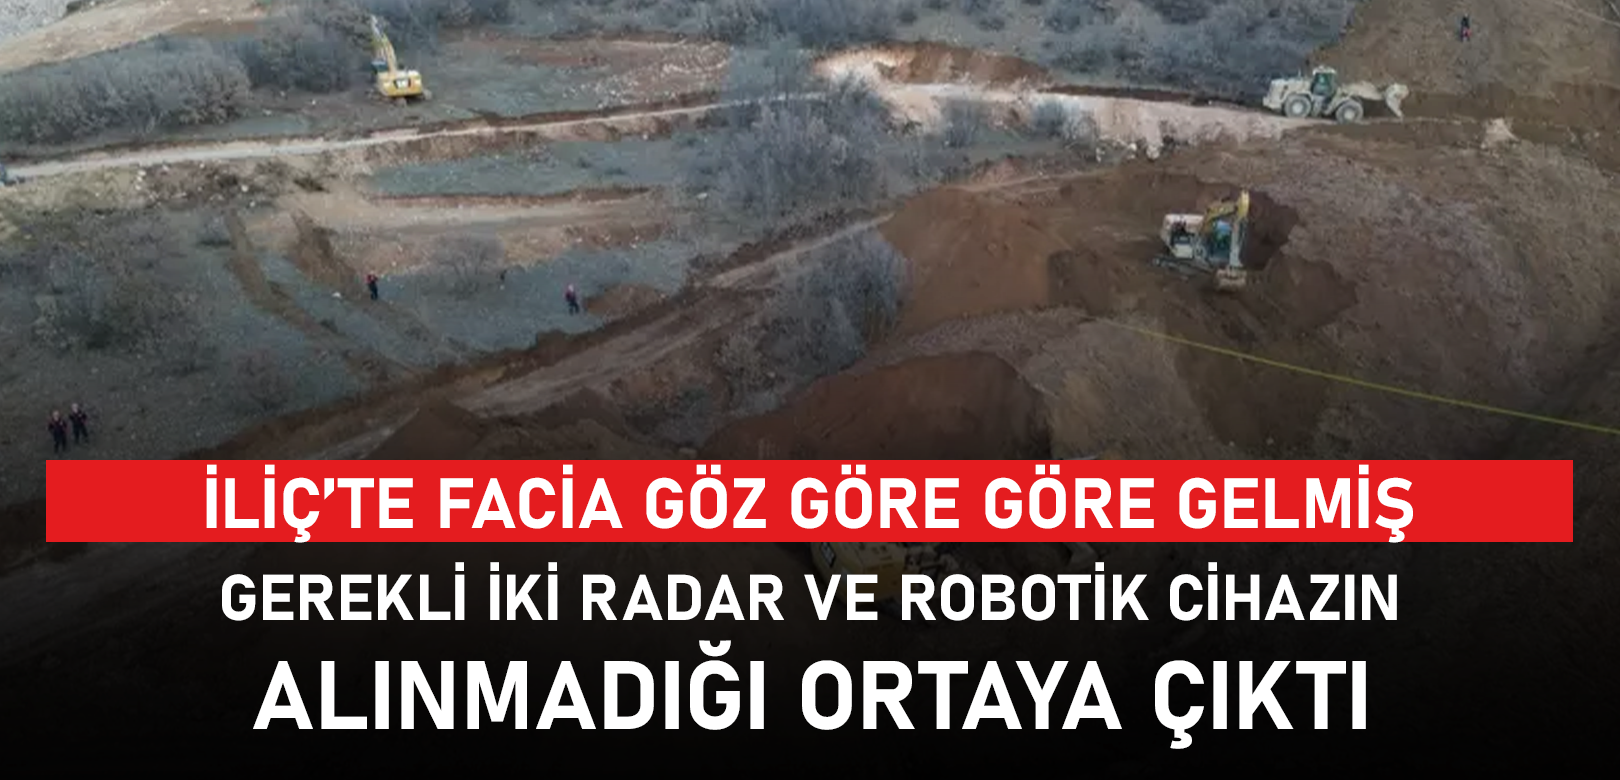 Facia göz göre göre gelmiş: Erzincan'da maden şirketinin, gerekli iki radarı ve robotik cihazı almadığı ortaya çıktı